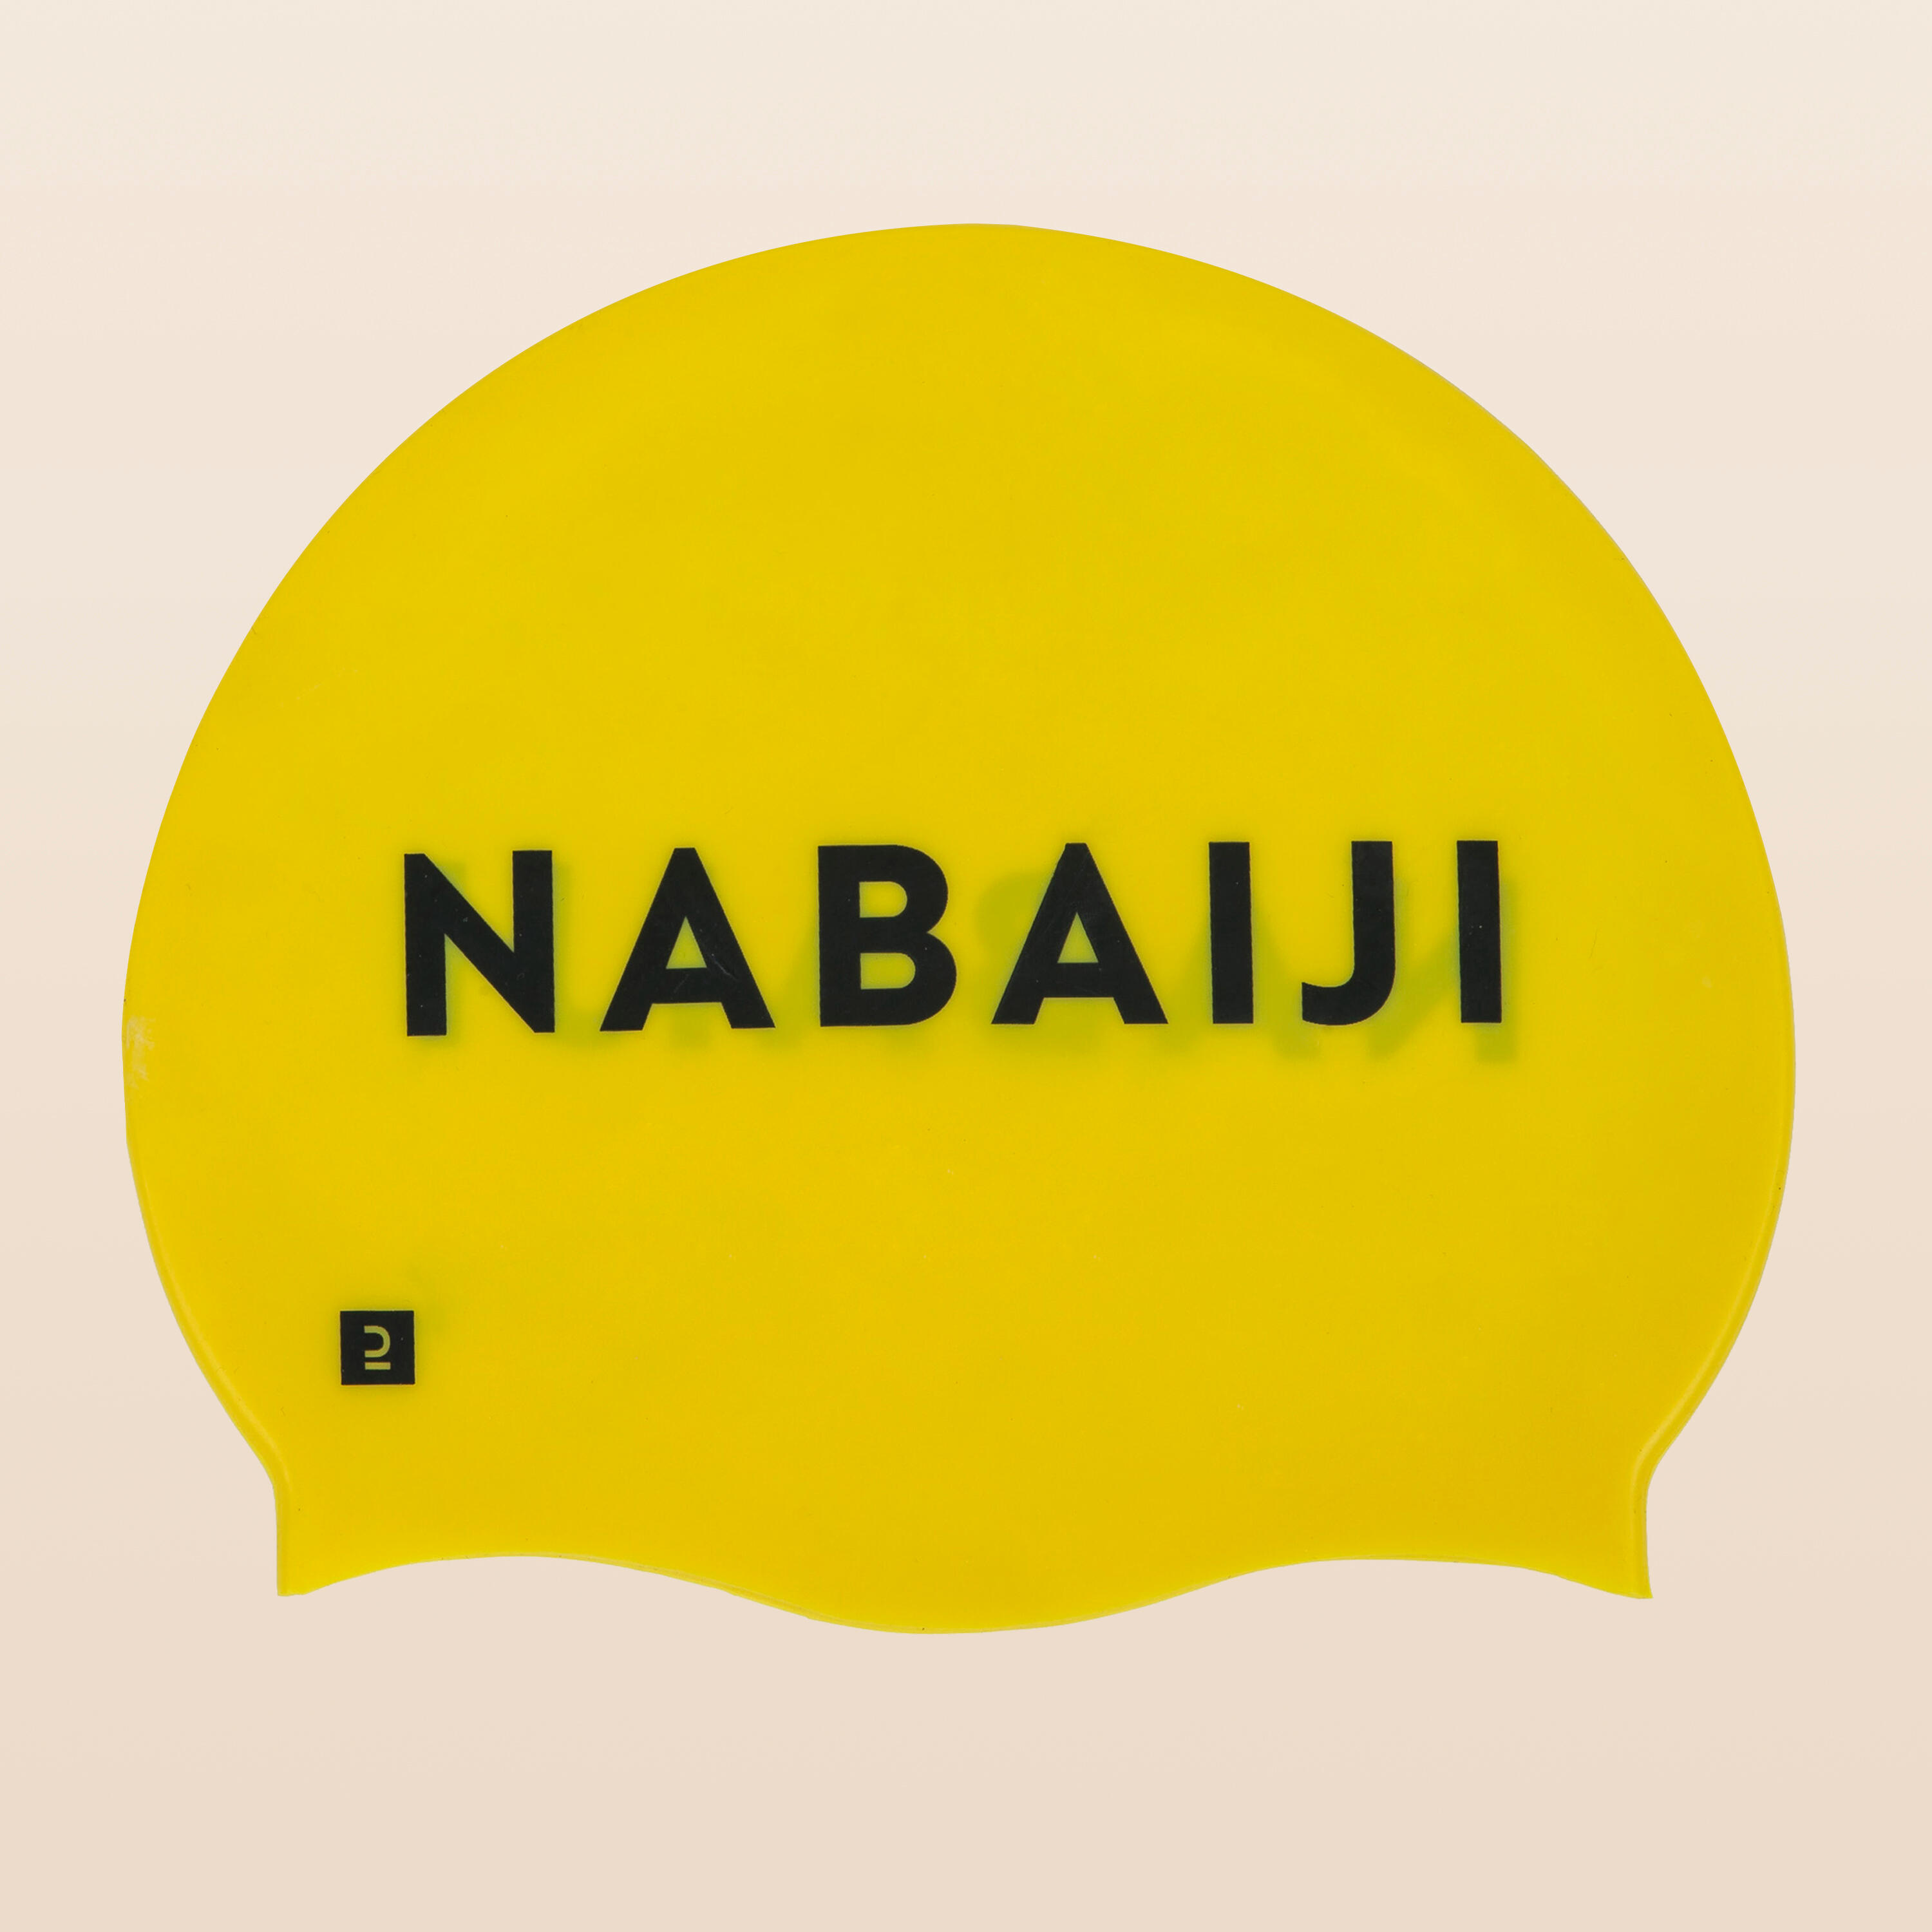 Шапочка для плавания силиконовая желтая NABAIJI шапочки для плавания женская шапочка для плавания с короткими волосами детская шапочка для плавания эластичная шапочка для плавания шап